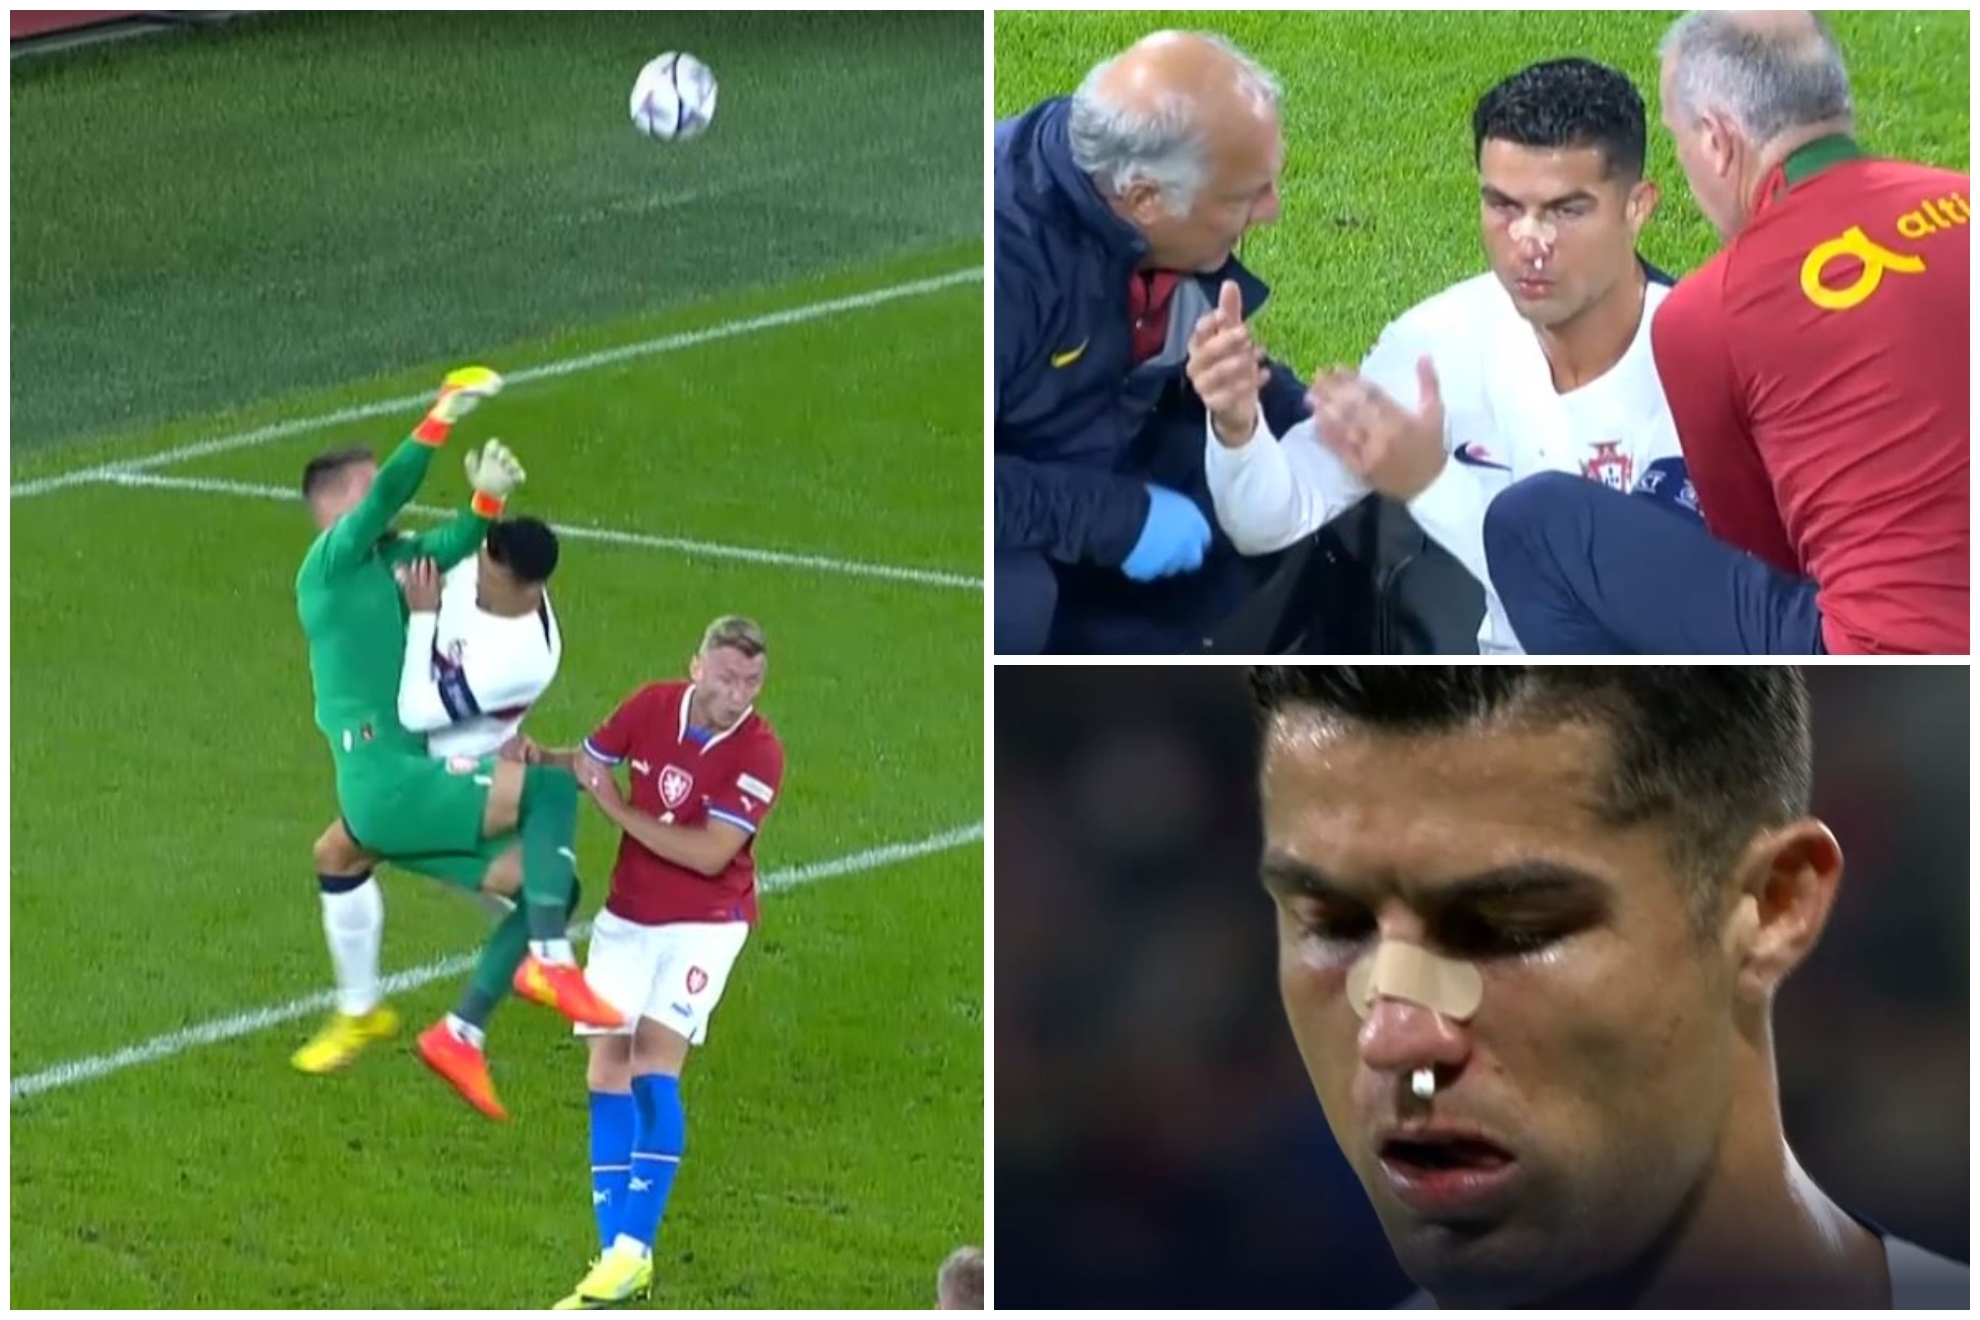 El tremendo golpe a Cristiano Ronaldo que le dejó la cara hecha un cromo